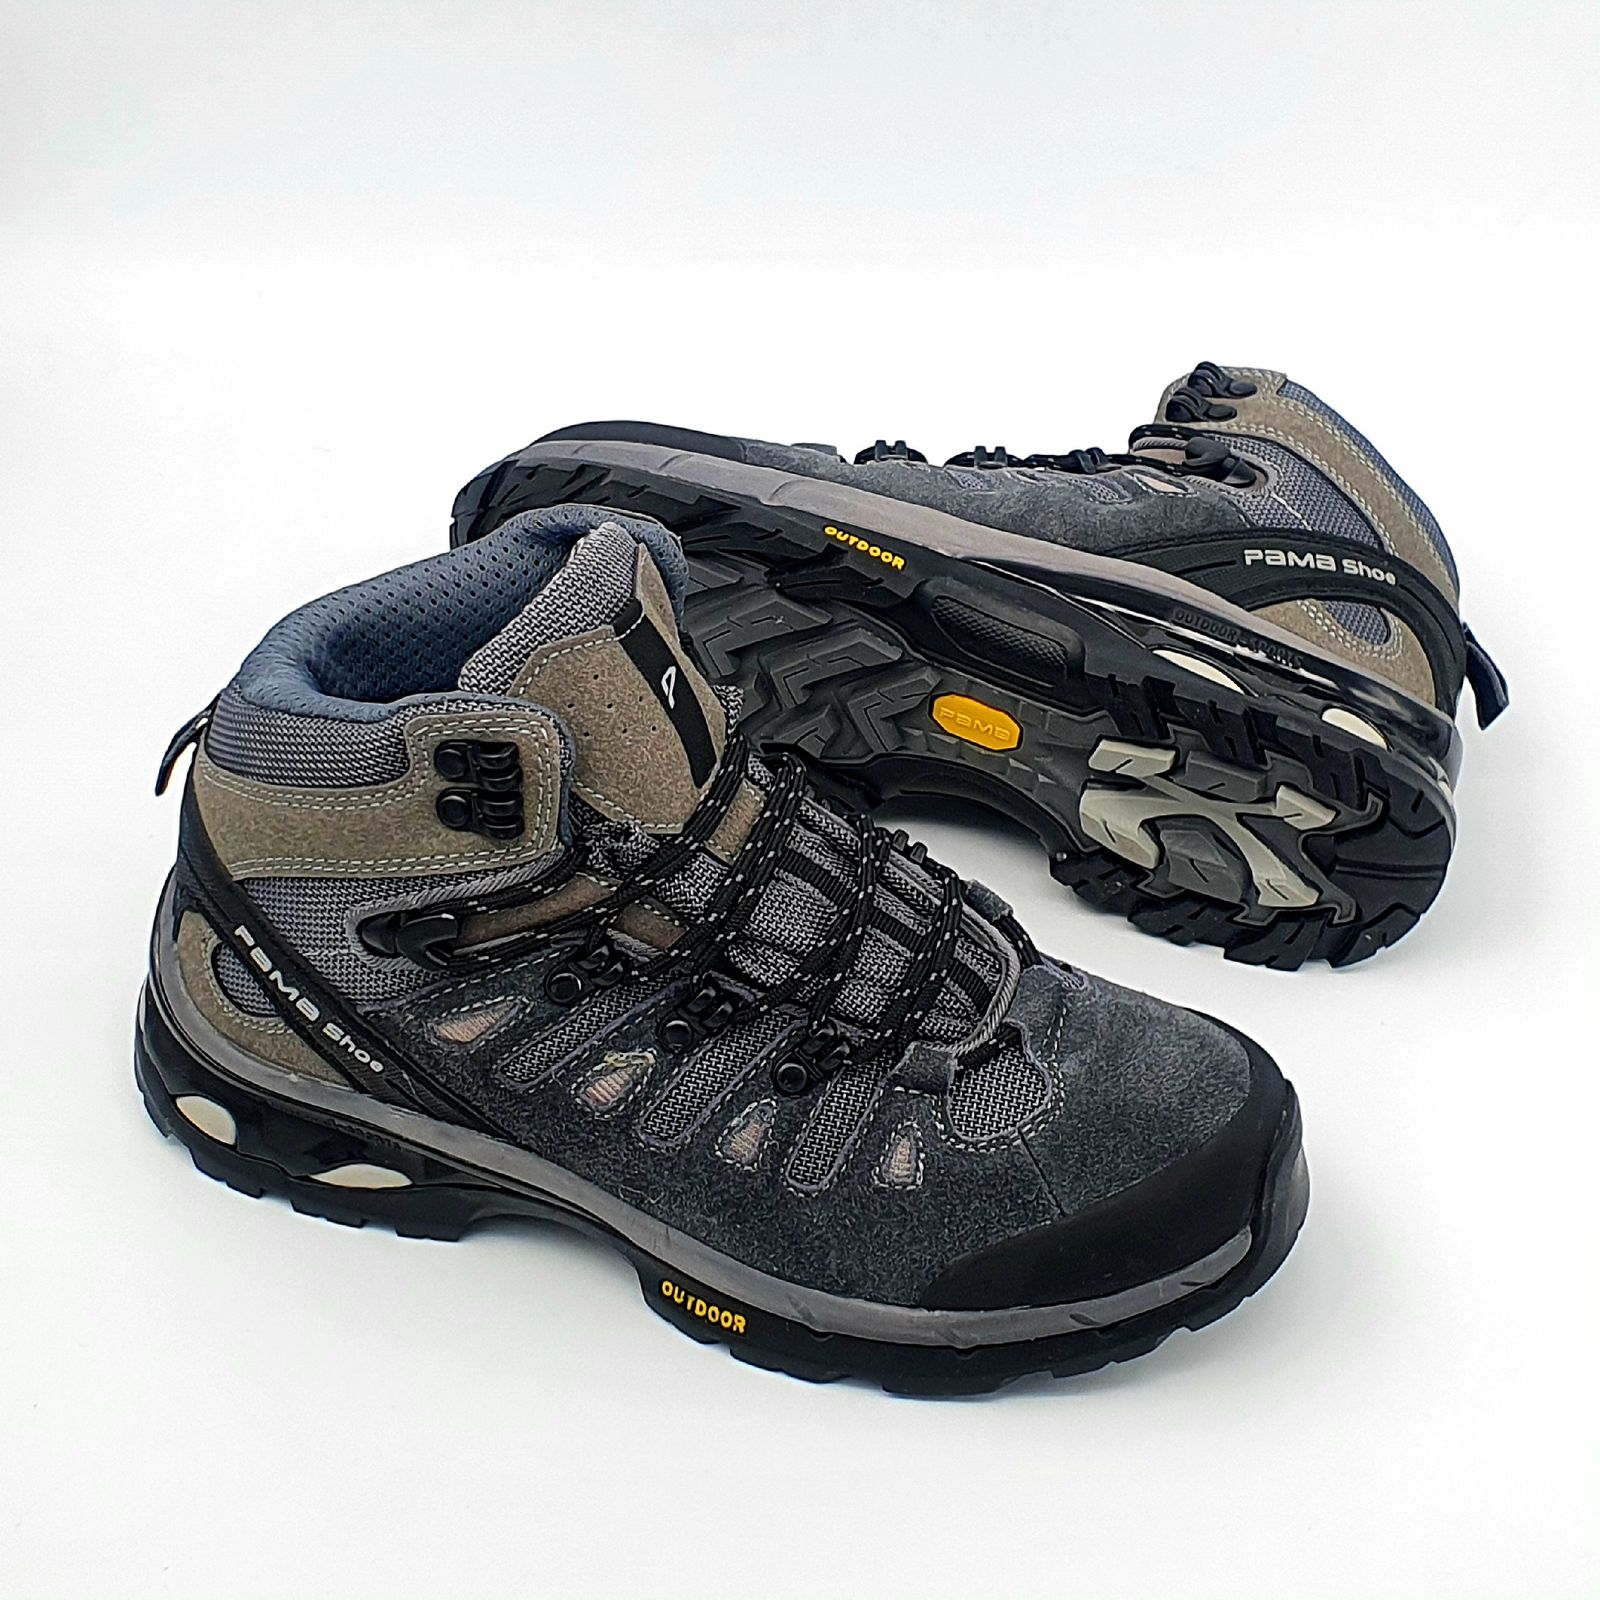 کفش کوهنوردی مردانه پاما مدل NBS-829 کد G1642 -  - 7